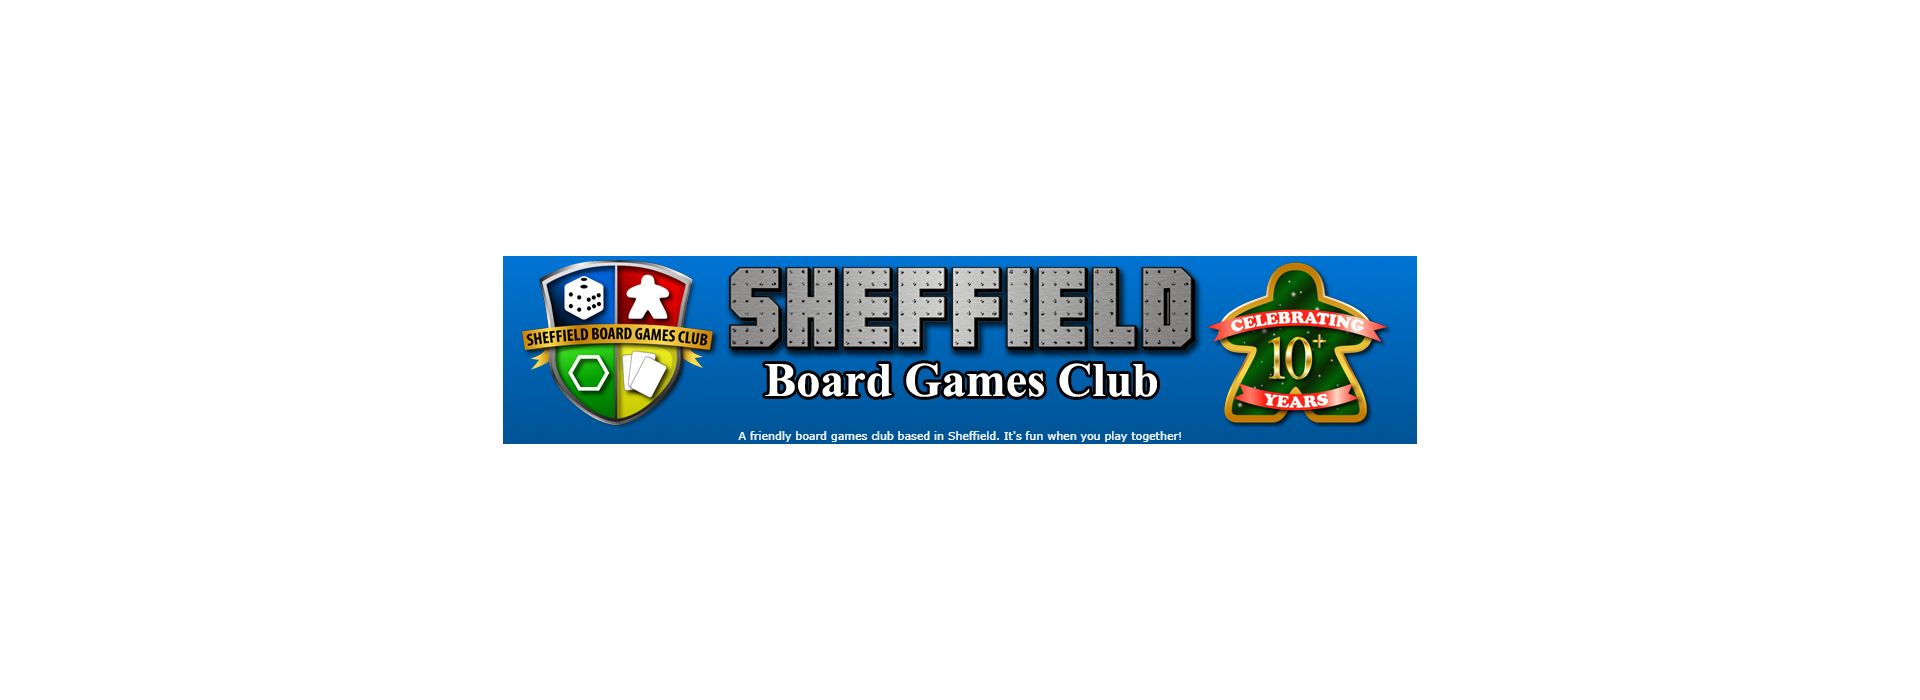 Sheffield Board Games Club Podcast